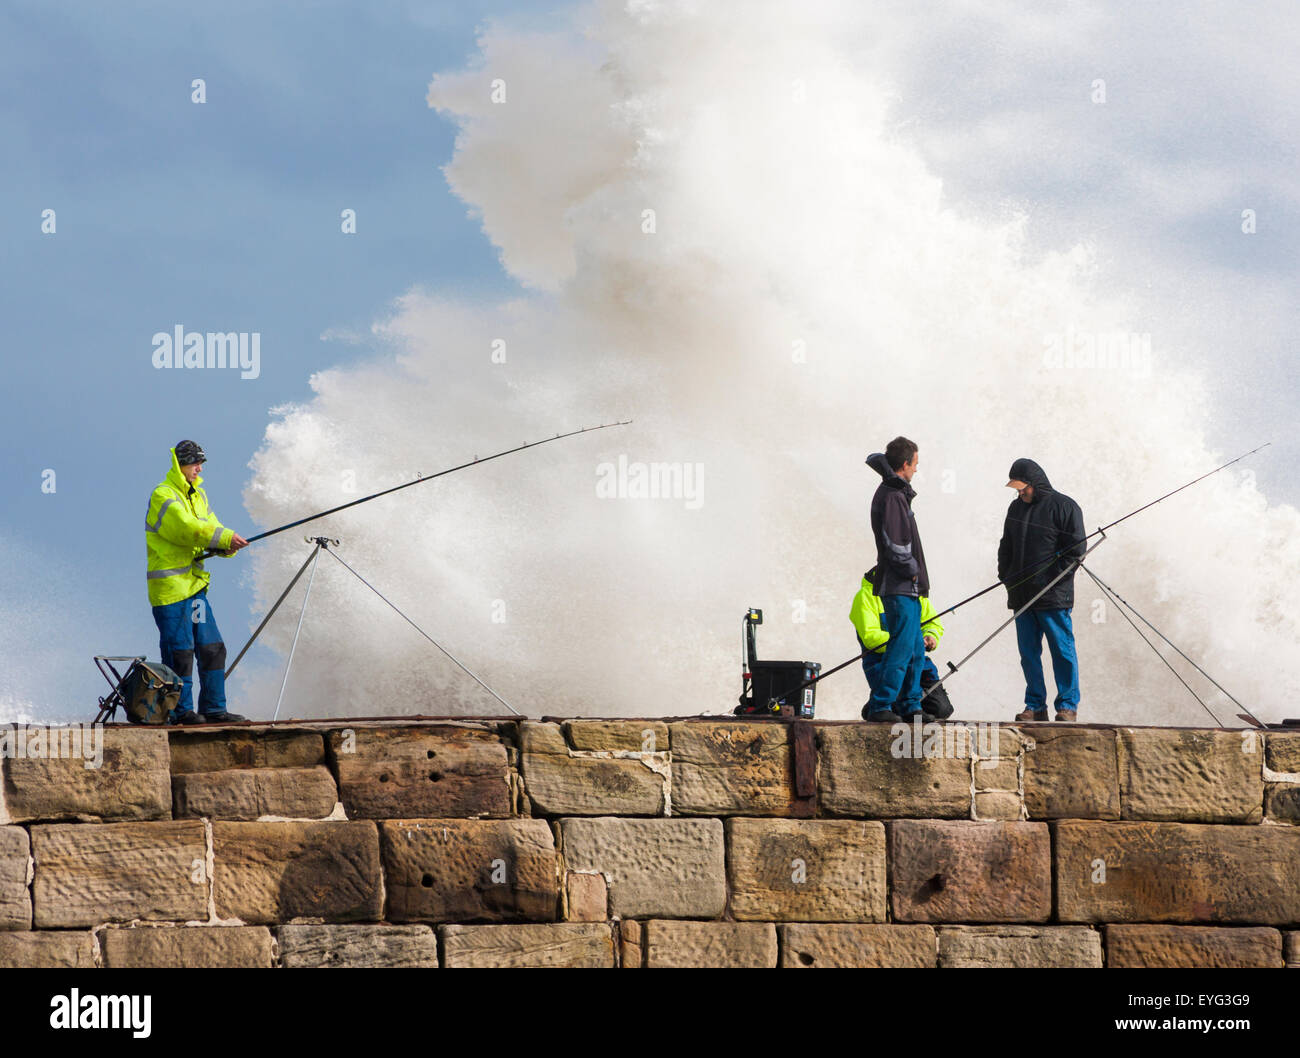 Menschen der Fischerei von Seaham Pier an einem stürmischen Tag mit riesigen Welle am Pier Wand hinter brechen. Seaham, County Durham, England, UK Stockfoto